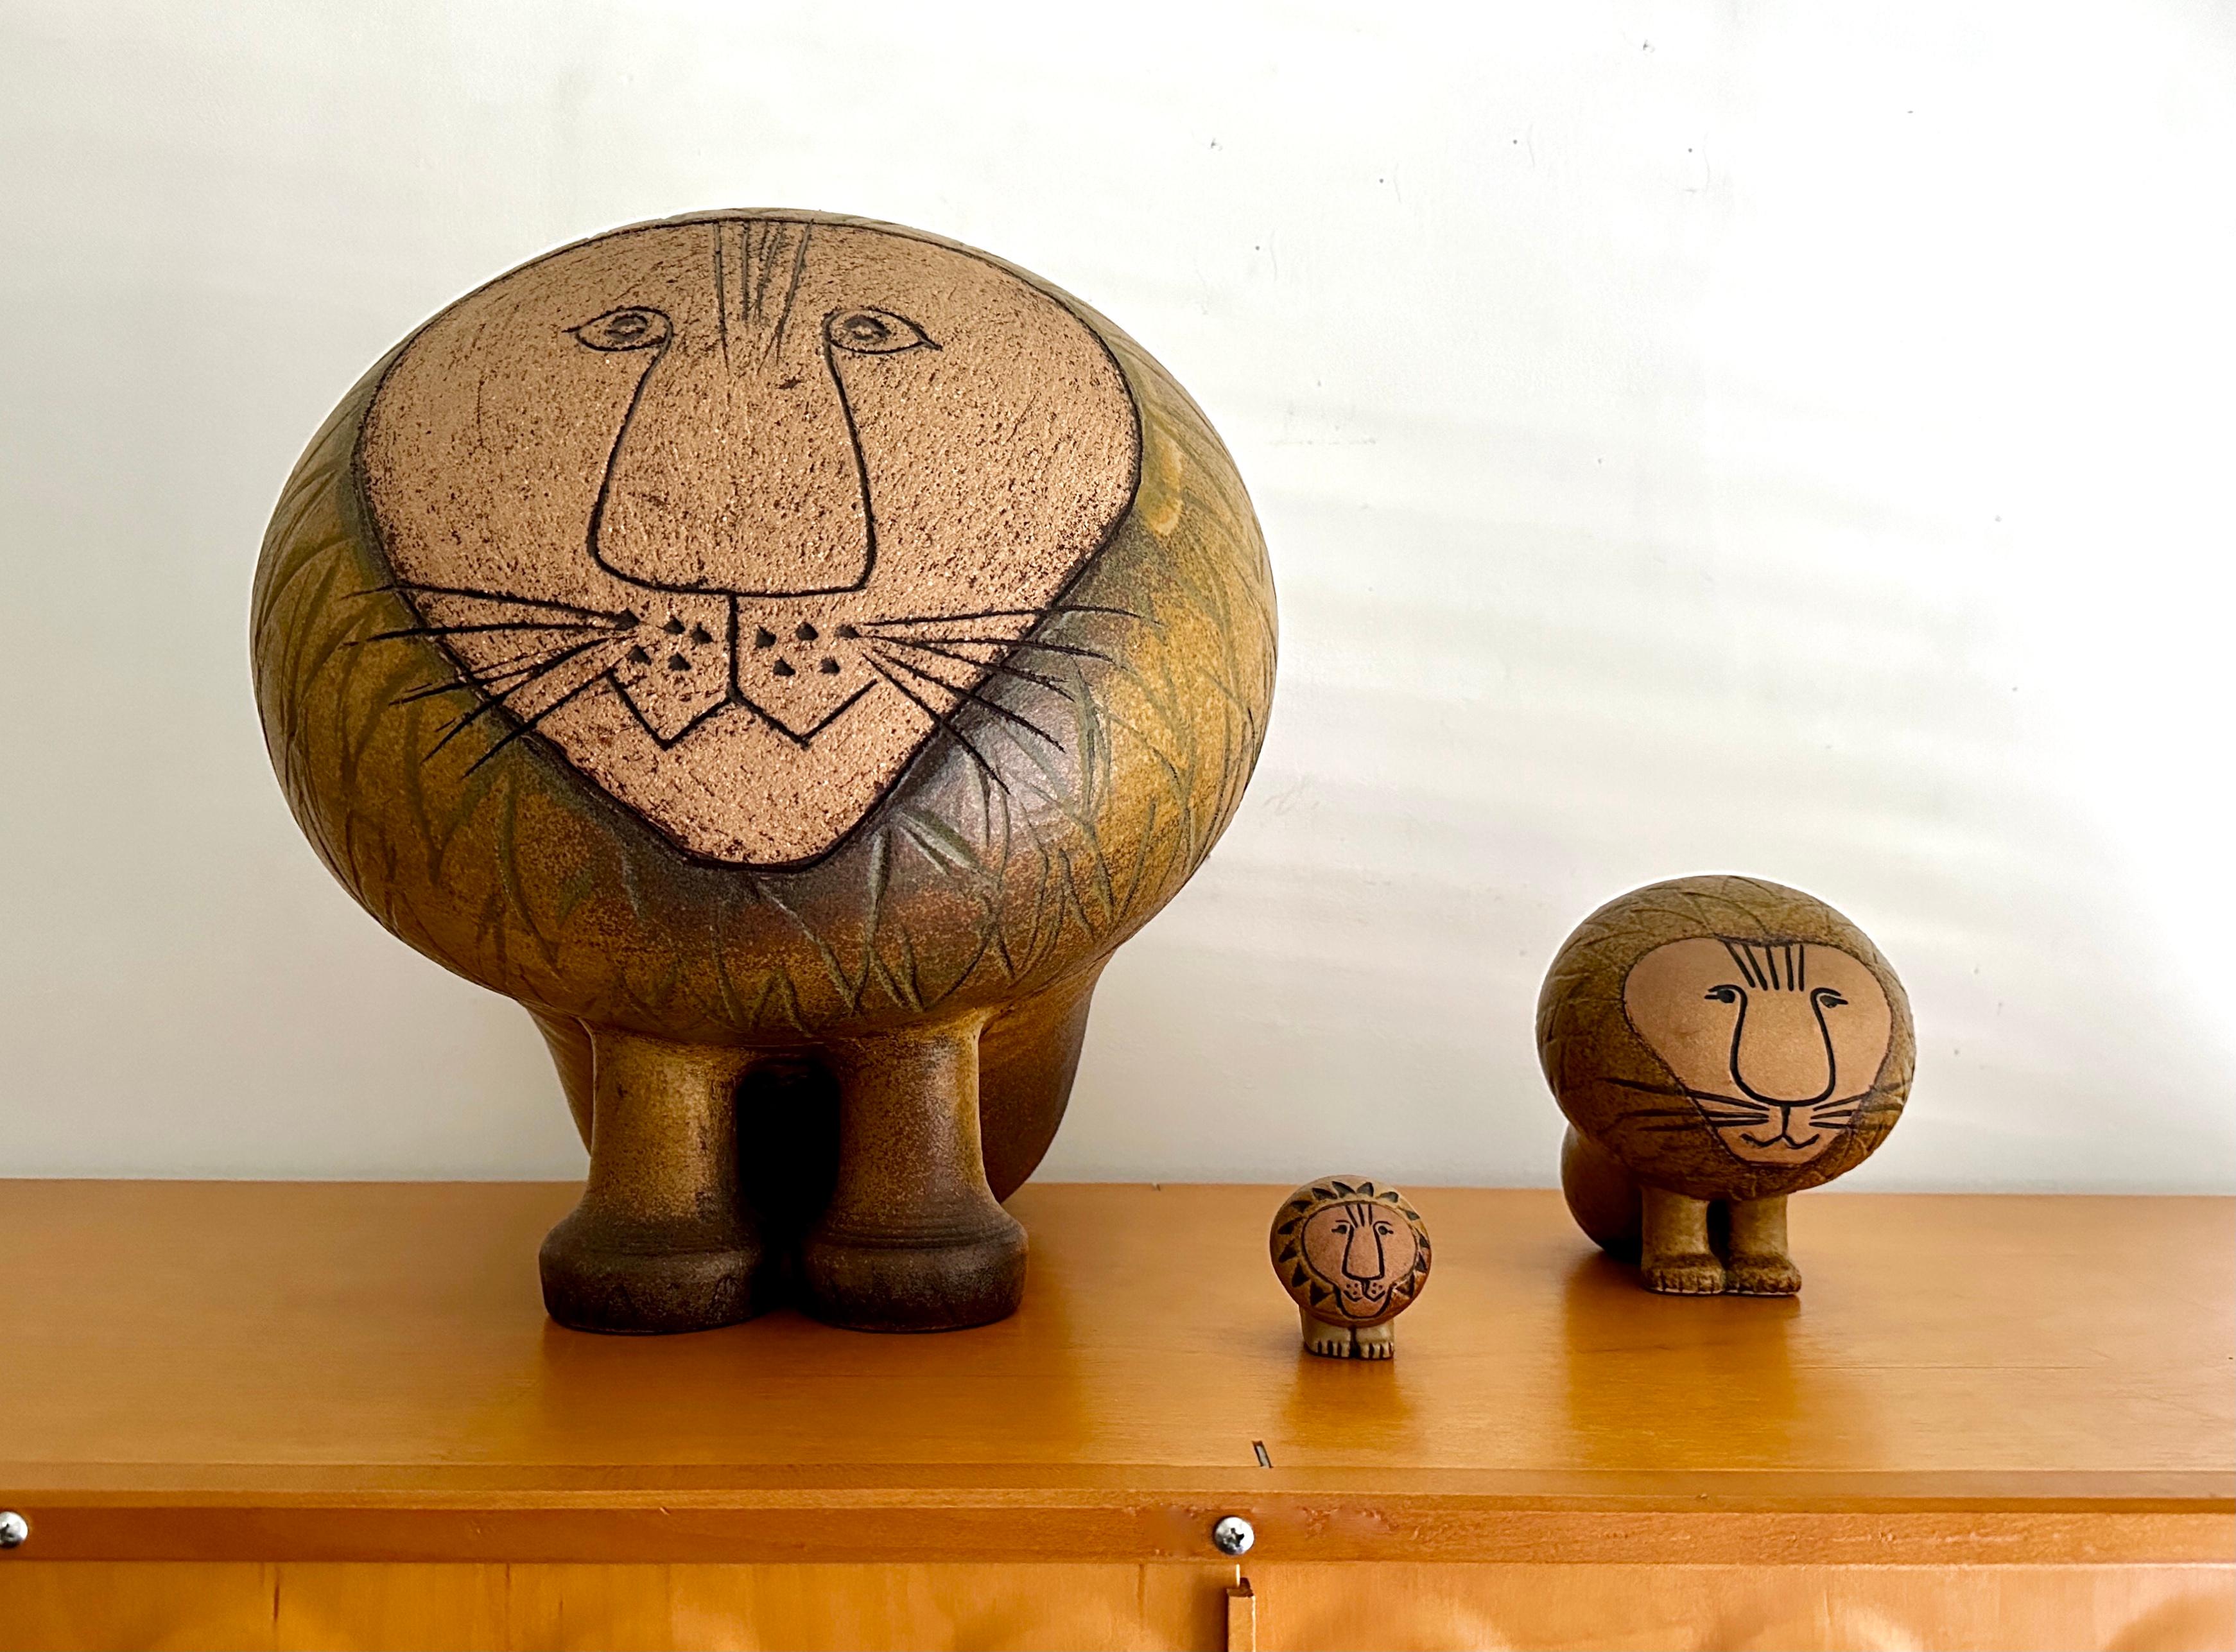 Drei Löwen in verschiedenen Größen, entworfen von der bekannten Designerin und Keramikerin Lisa Larson. Die Löwen stammen aus der Serie Afrika, die 1964 entworfen wurde. Das Set besteht aus einem Mini-Löwen, einem großen und einem riesigen Löwen.